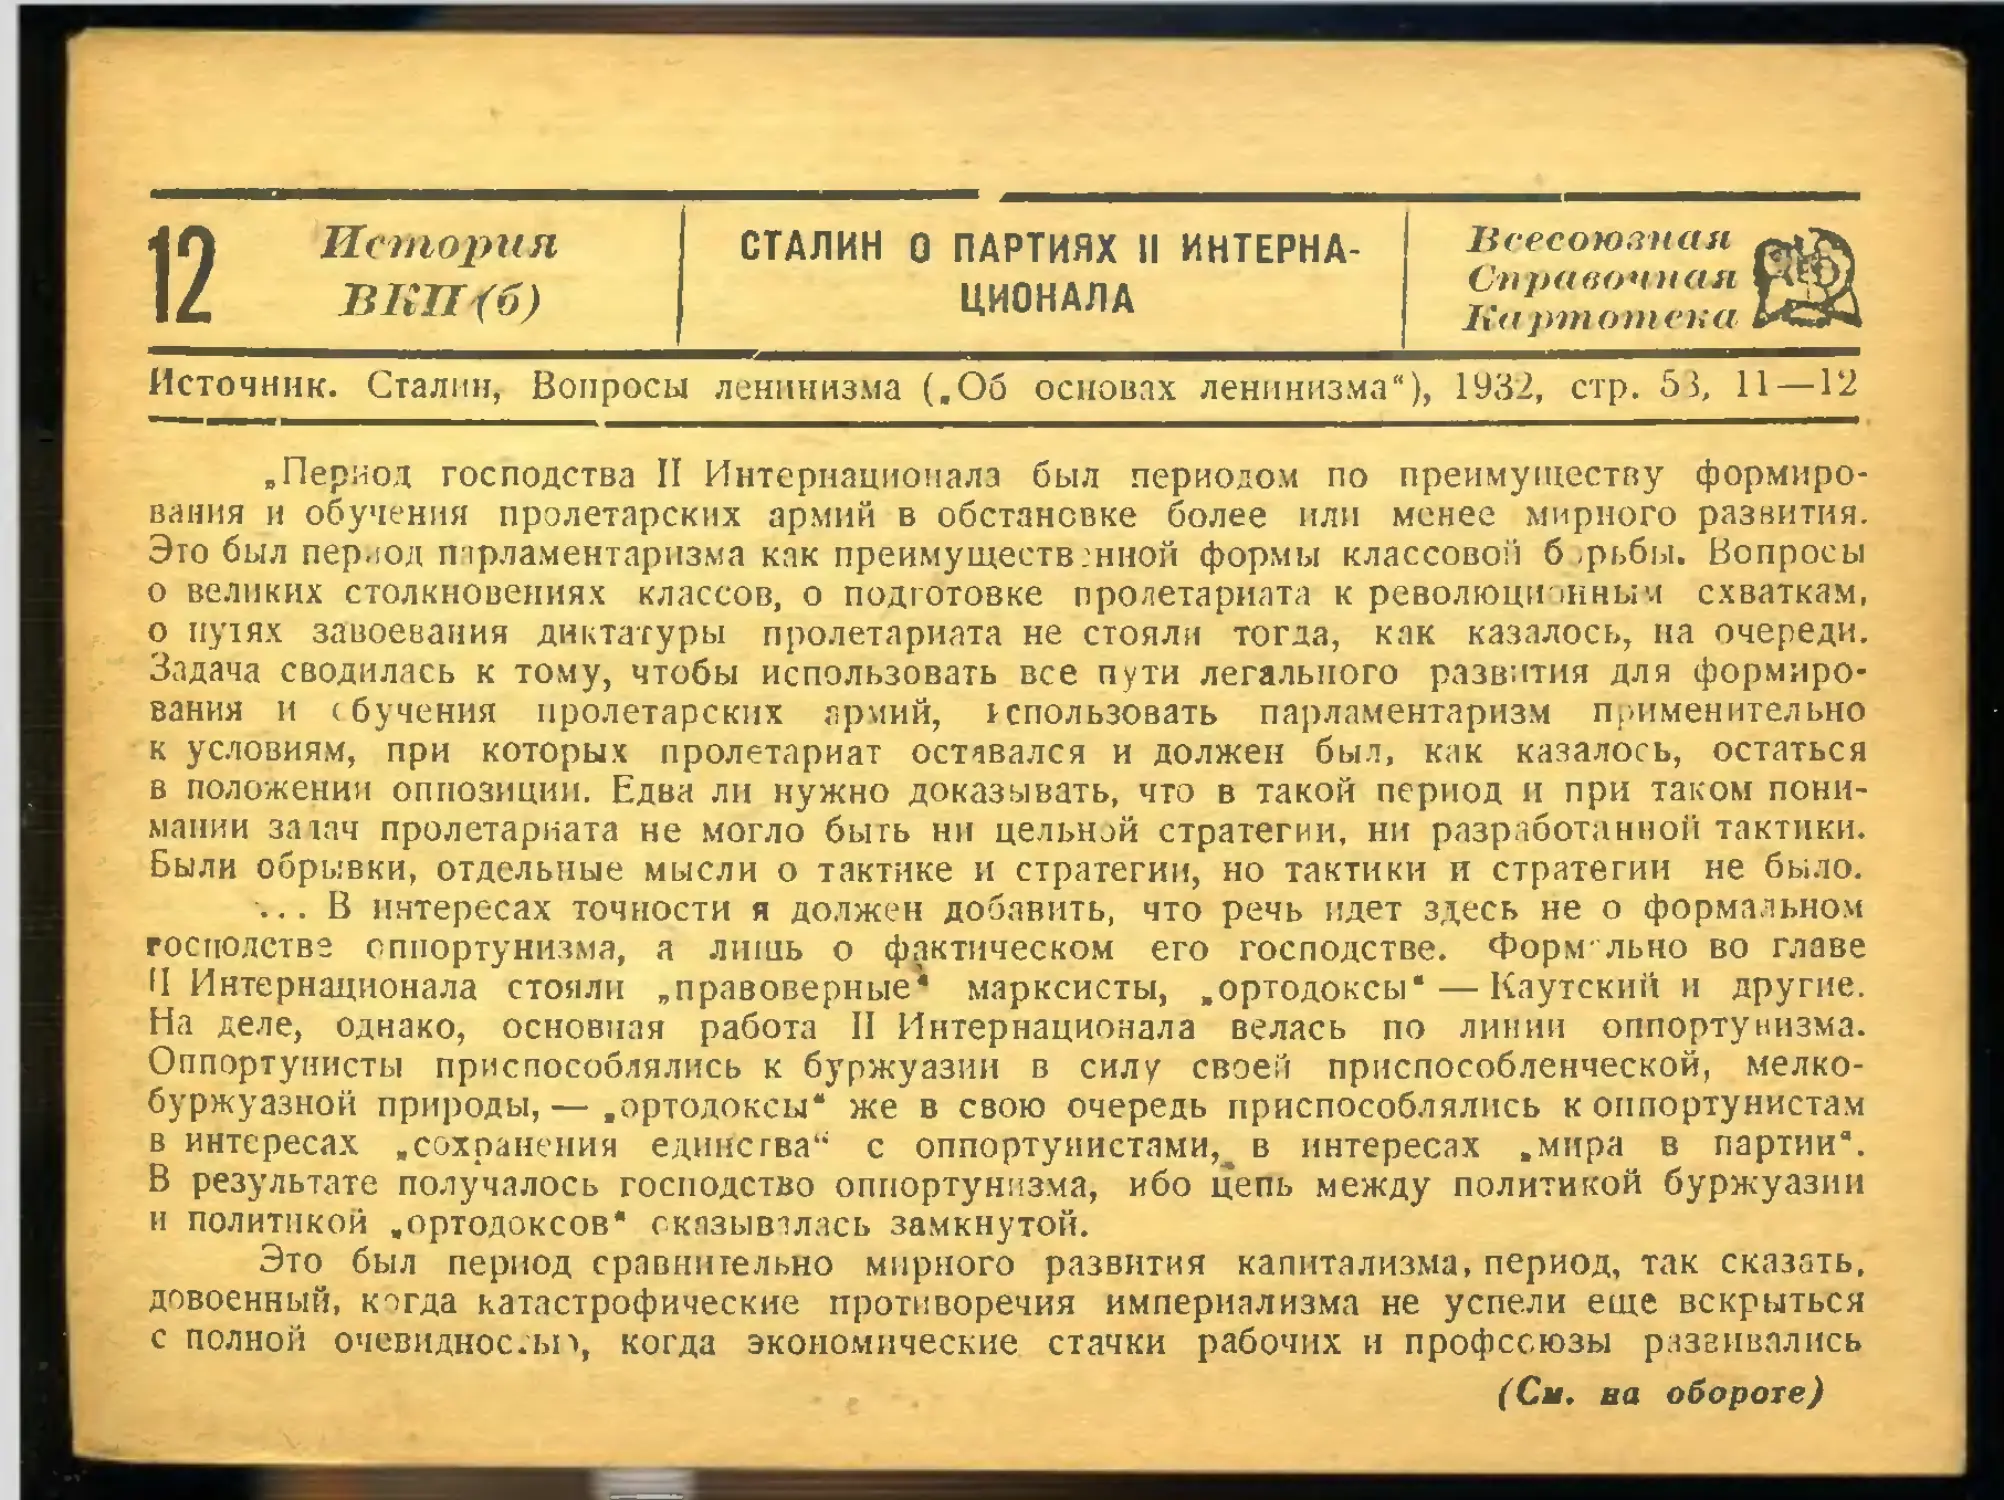 12. Сталин о партиях II Интернационала.